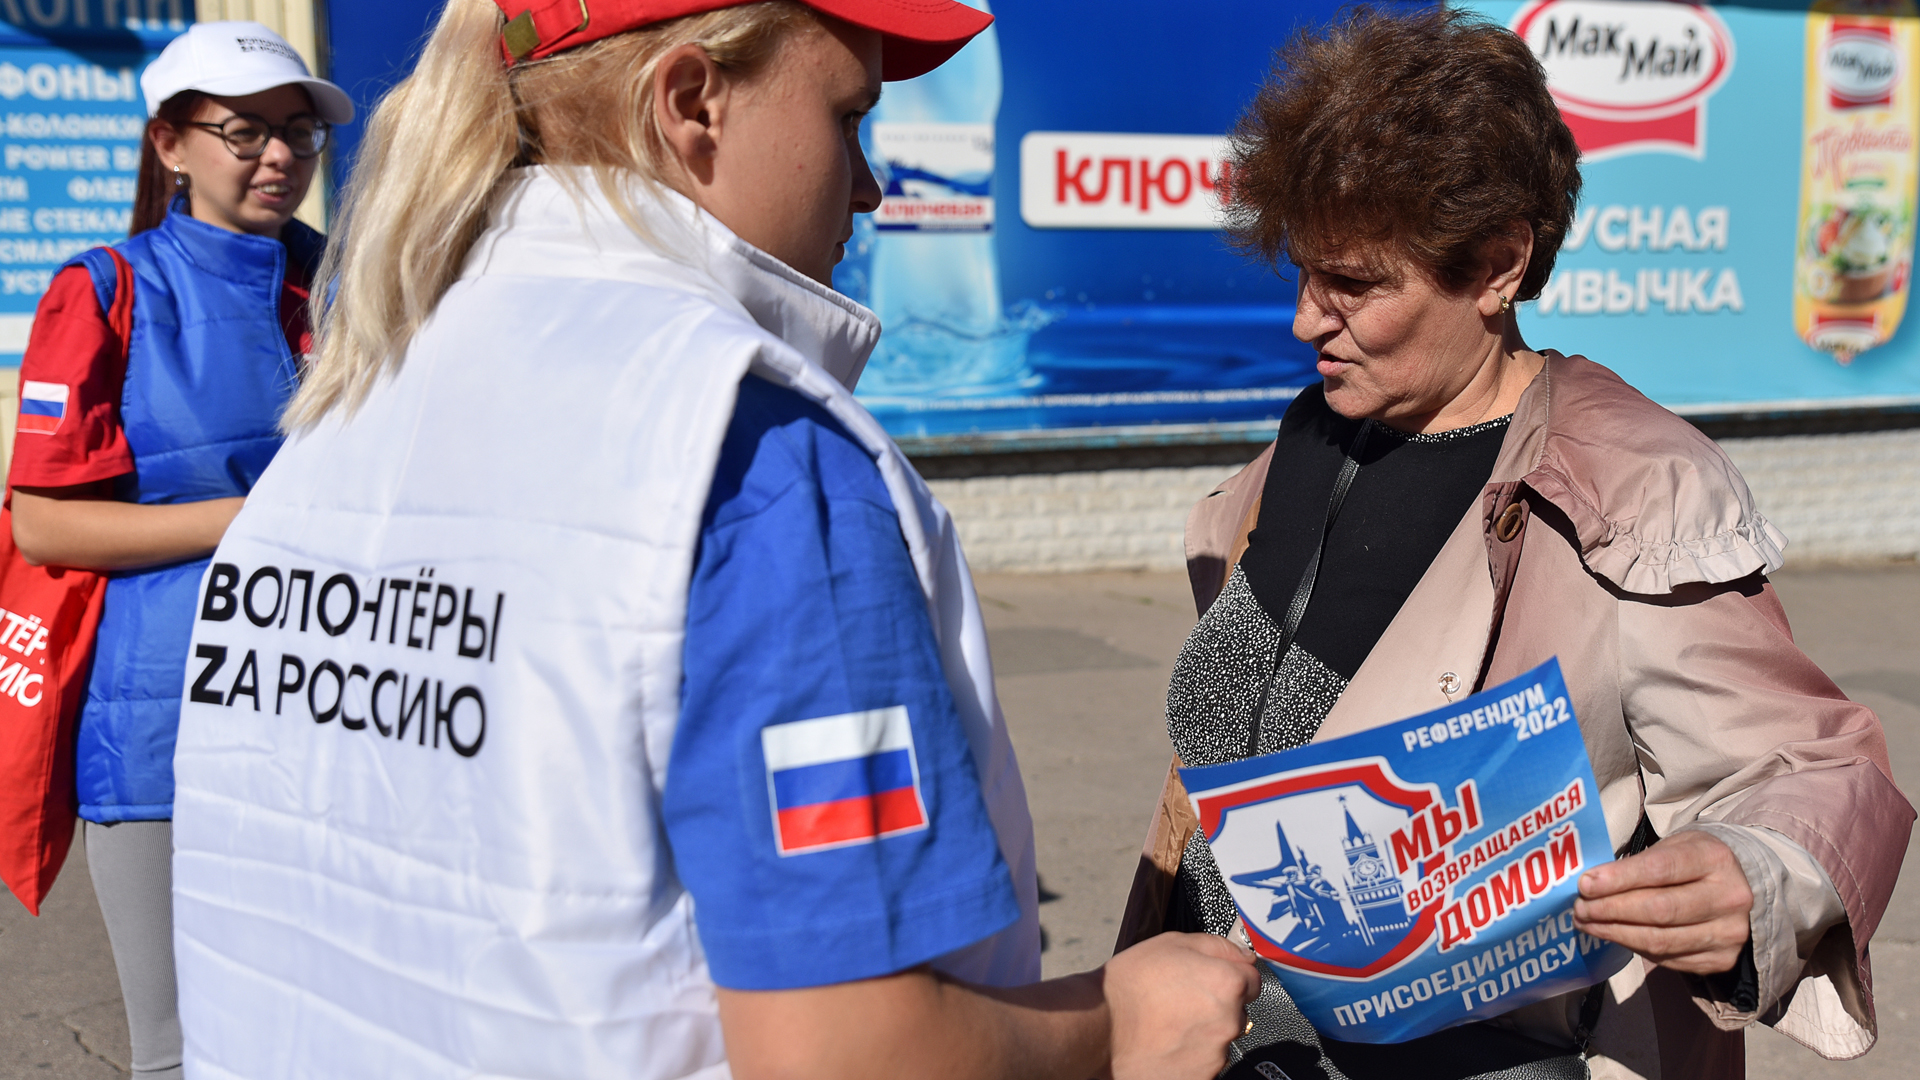 Junge Frauen mit einer Weste der Aufschrift "Freiwillige für Russland" verteilen in Donezk Werbematerial für das Scheinreferendum an eine Frau. | picture alliance/dpa/TASS